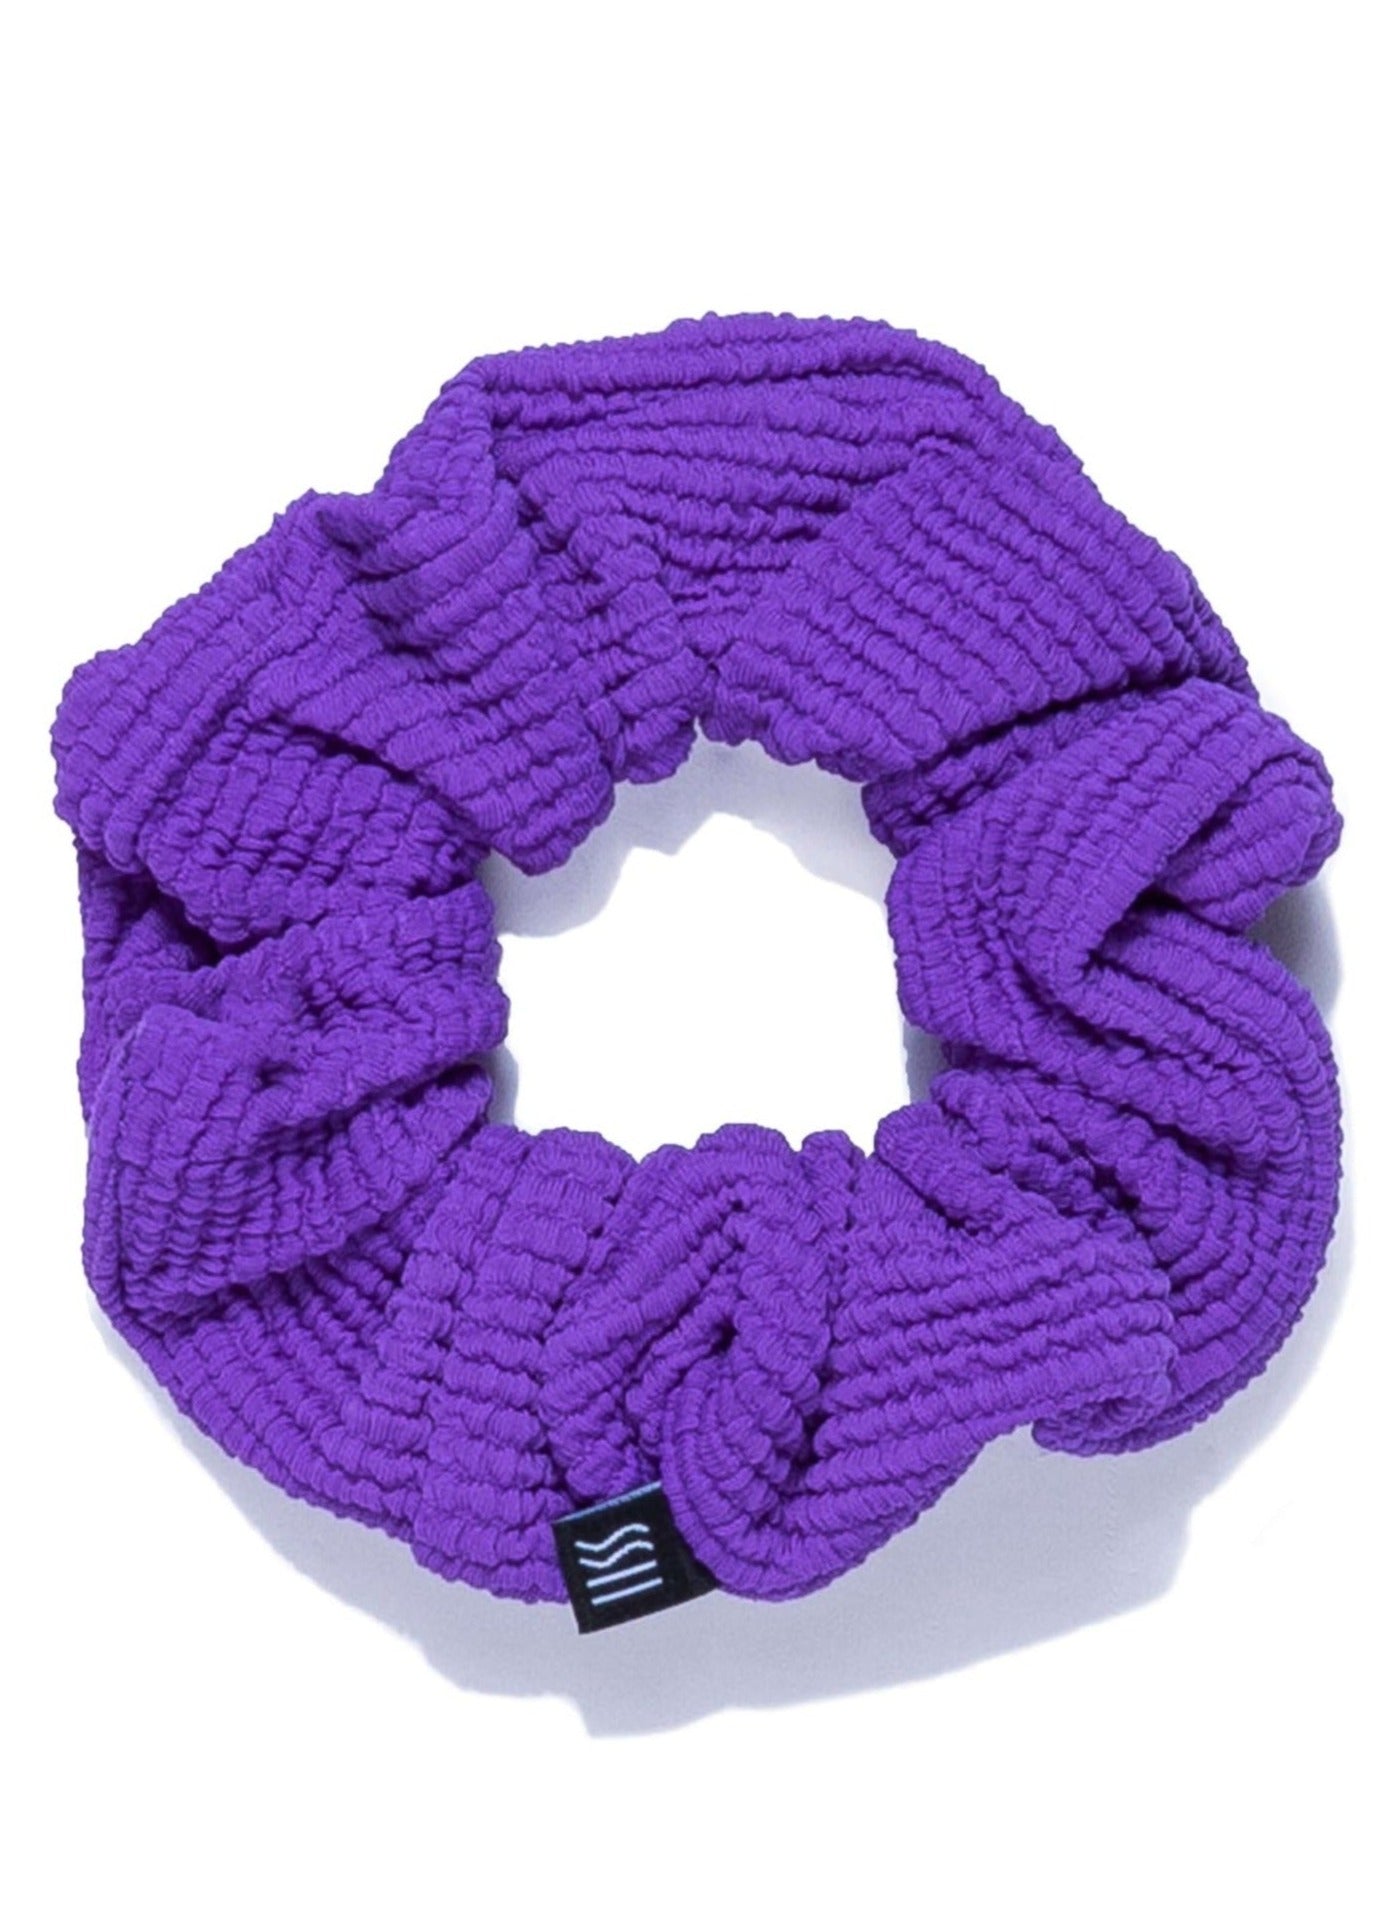 Purple Scrunchie on white background.